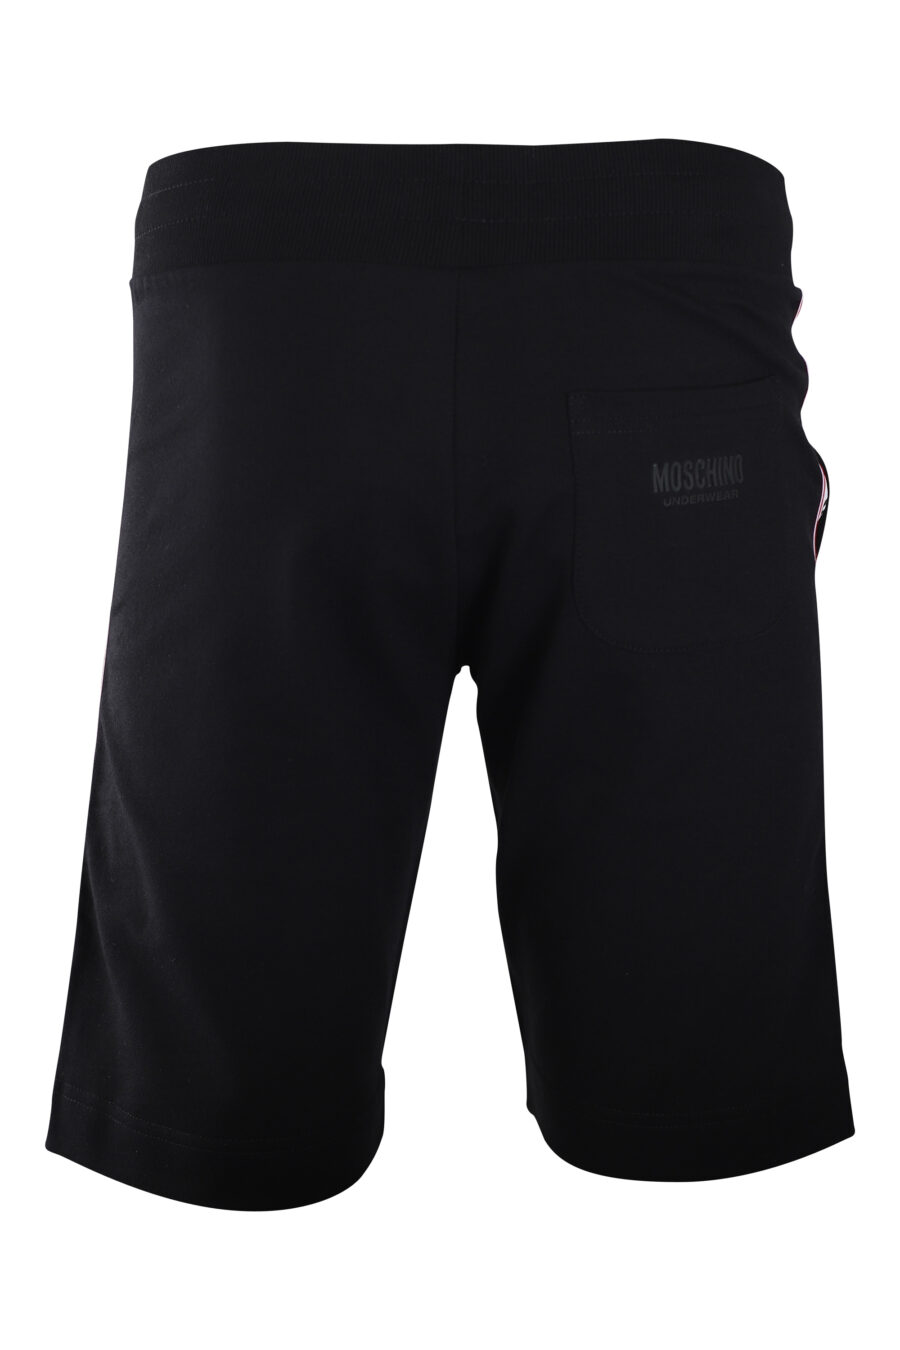 Pantalón de chándal corto negro con logo en banda laterales - IMG 2237